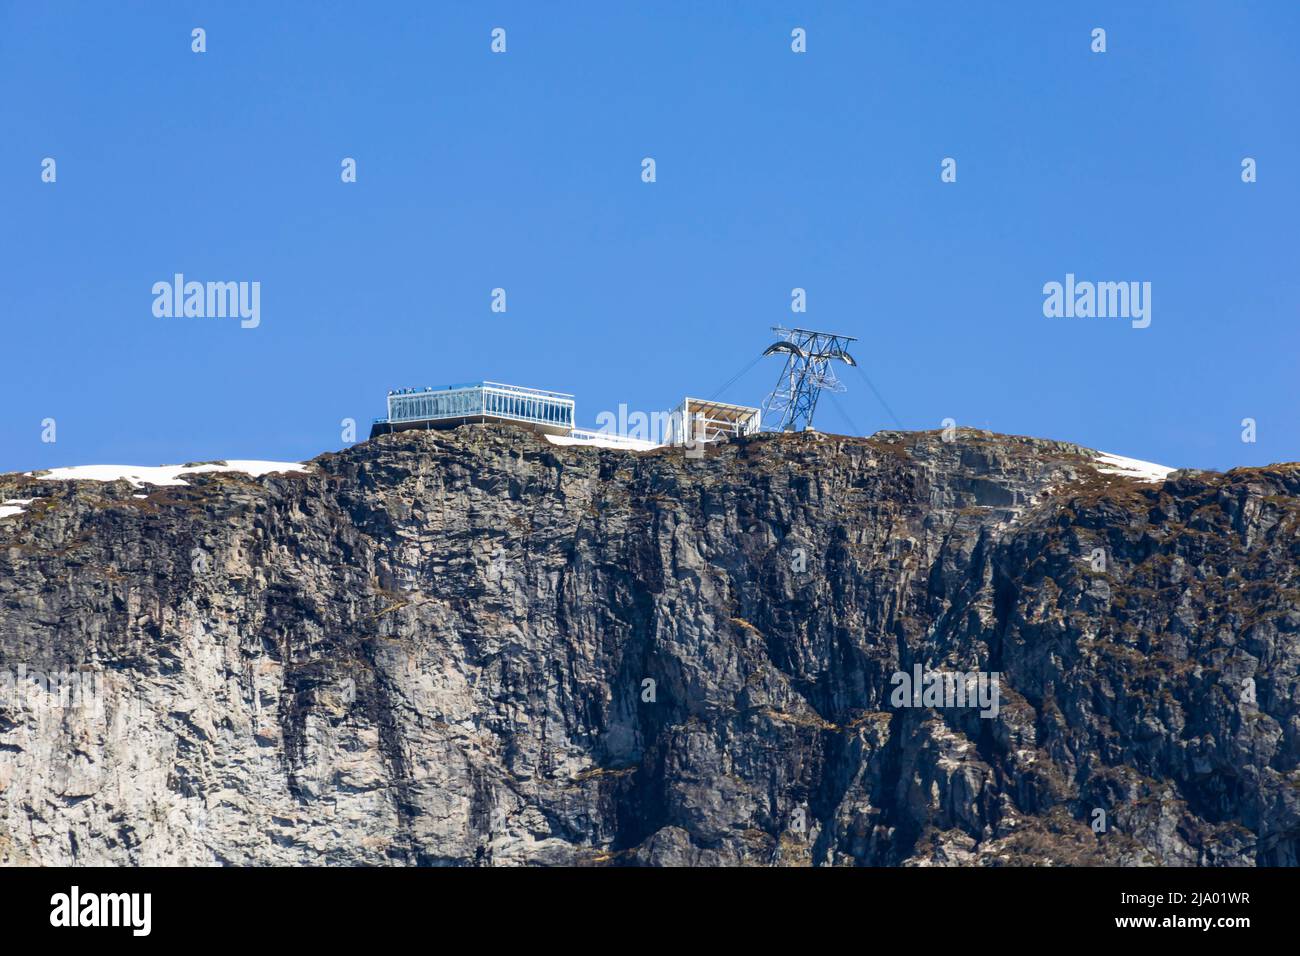 Stazione di montagna della funivia Loen Skylift sul monte Hoven, sopra il lago Lovatnet, Norvegia Foto Stock